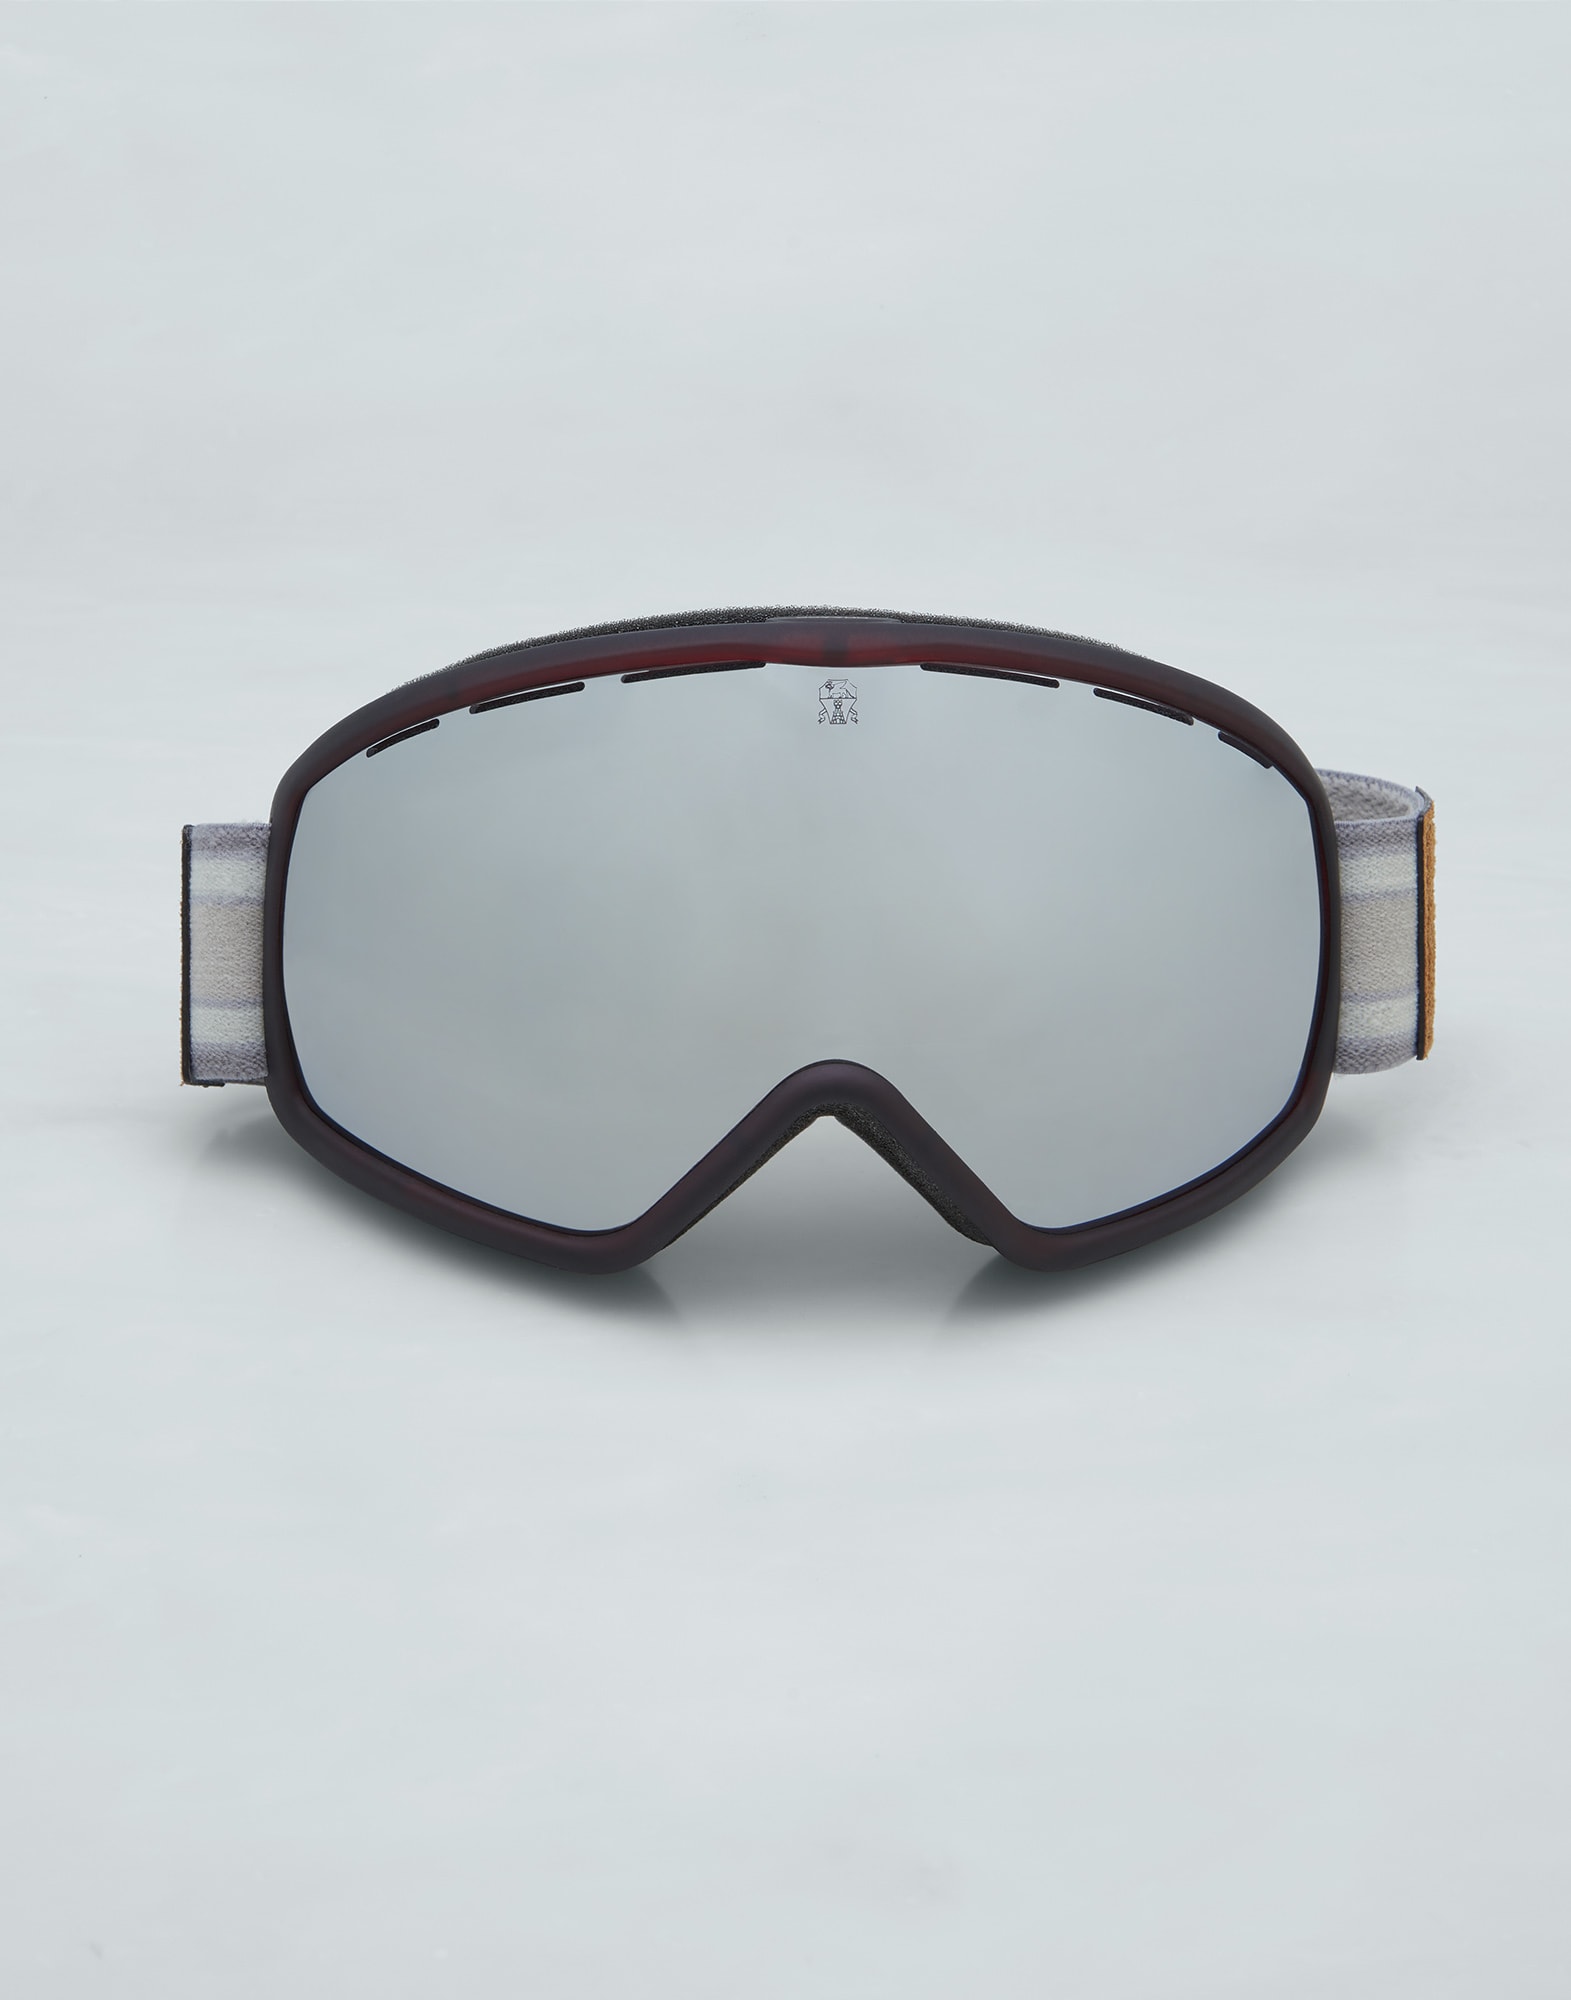 Check Now Prescription Ski / Snow Goggles - Goggleman – Tagged 